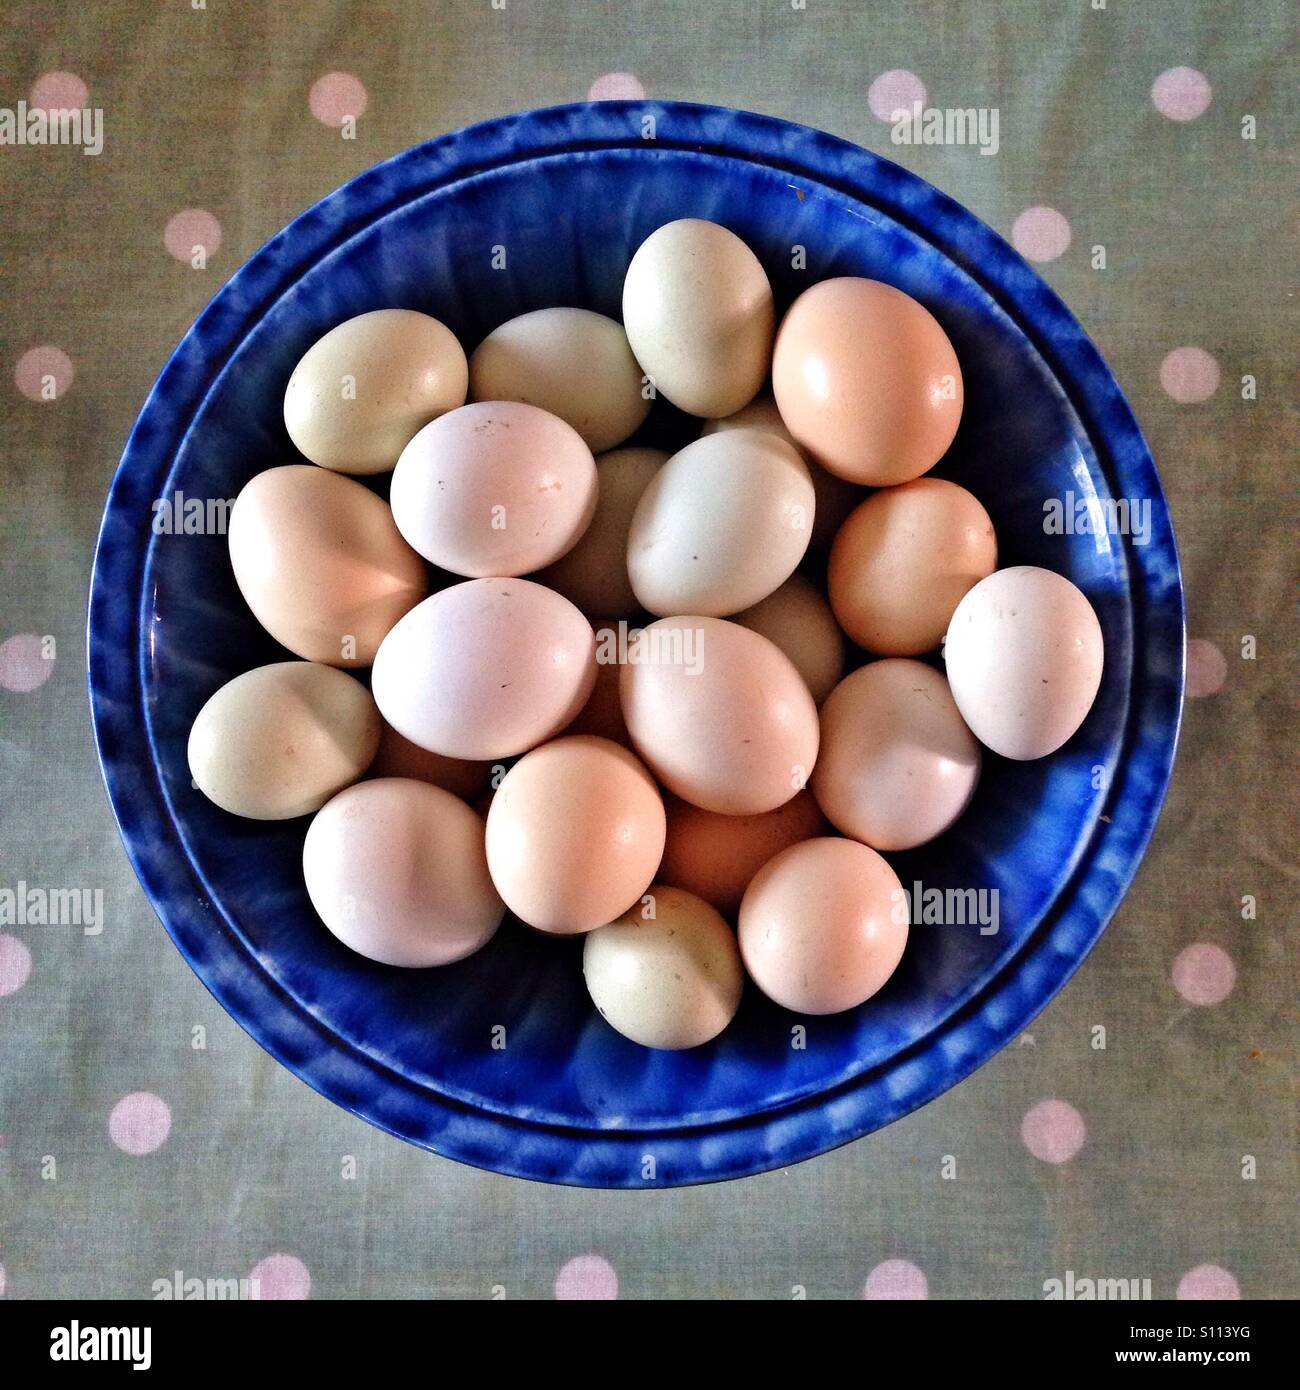 Large bowl of free range eggs Stock Photo